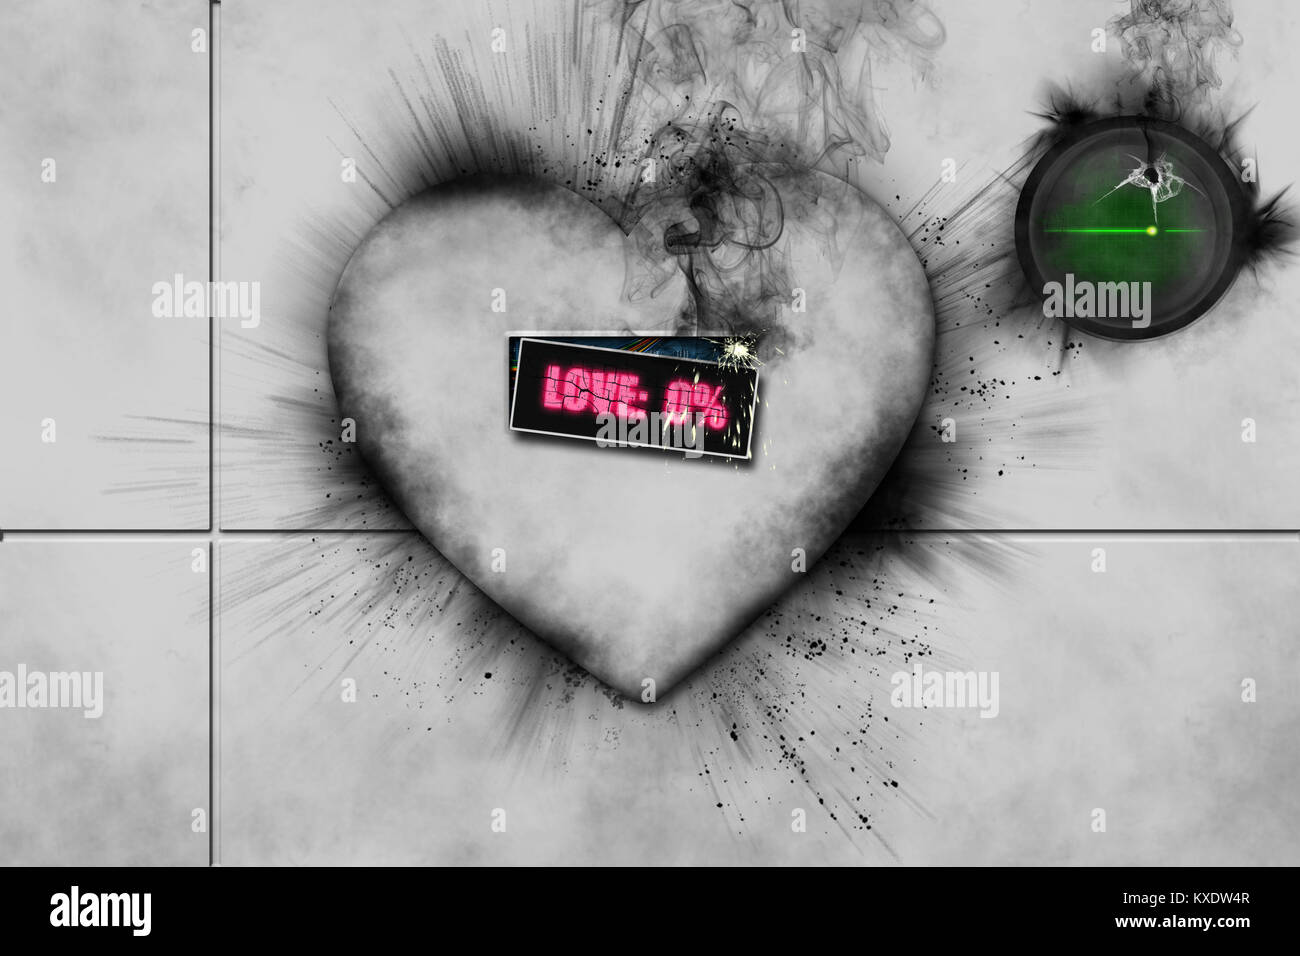 Coeur blanc cassé avec 3D de la fumée noire qui en provient, mot amour écrit en rose et bouton vert avec télévision à corner ligne cardiaque Banque D'Images